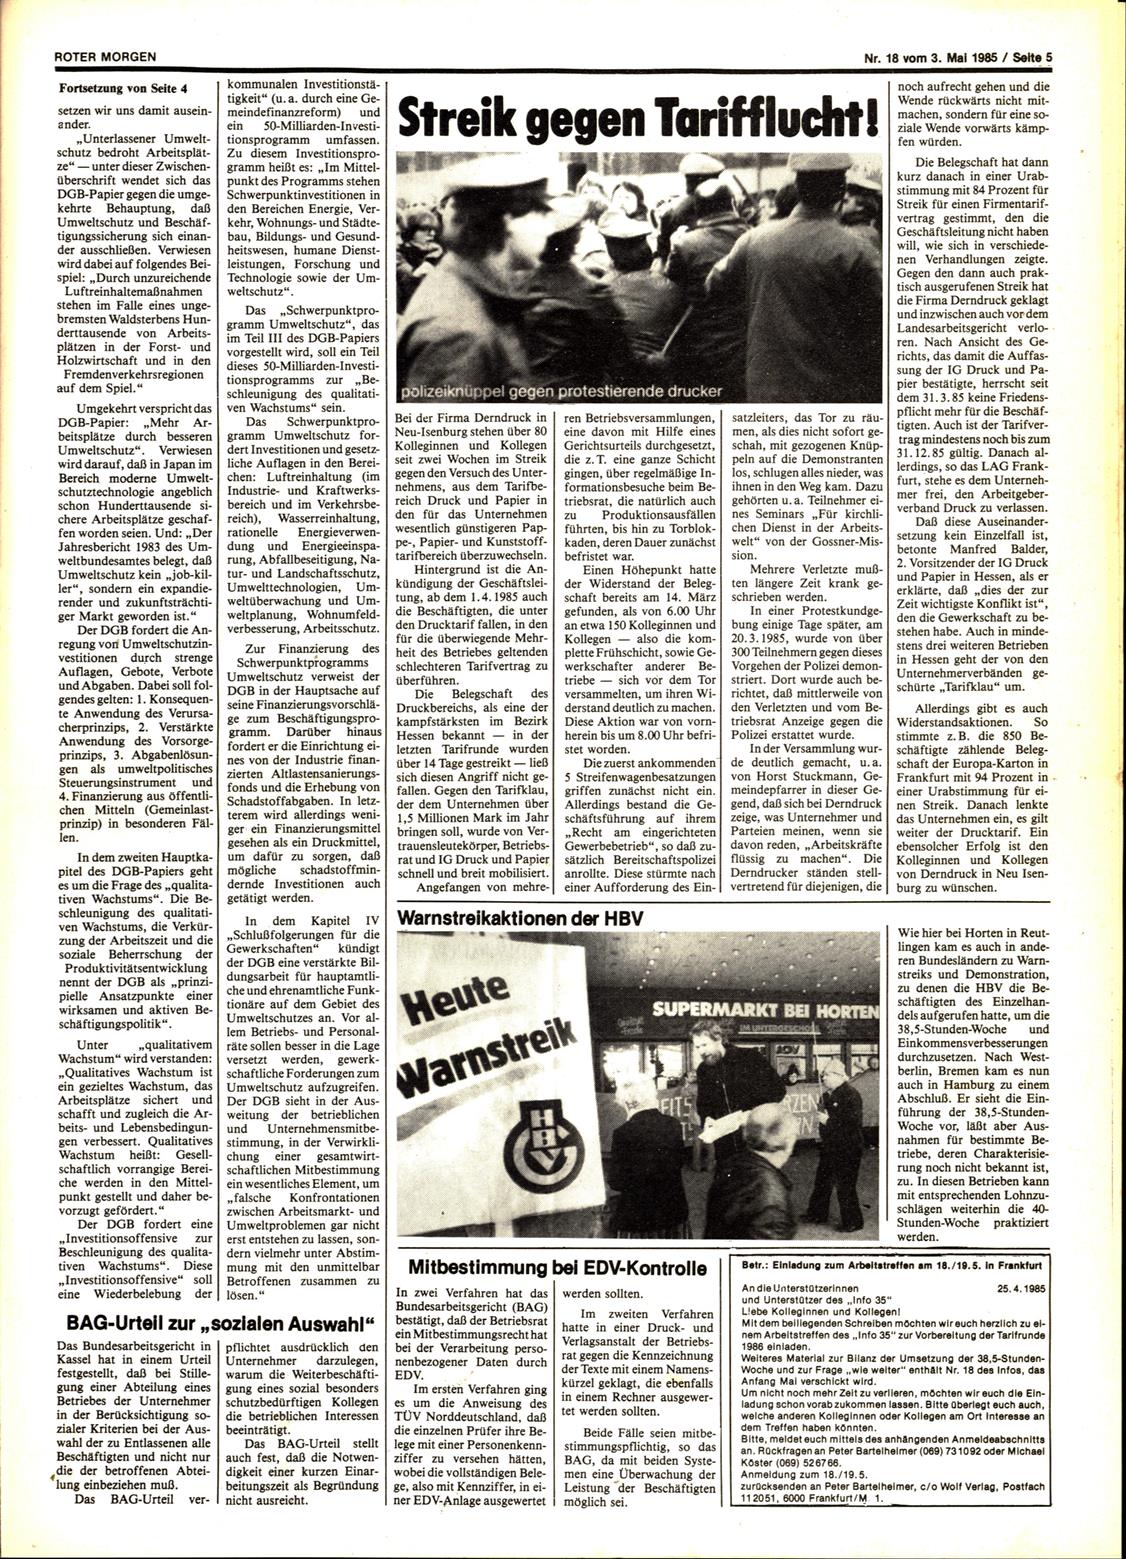 Roter Morgen, 19. Jg., 3. Mai 1985, Nr. 18, Seite 5